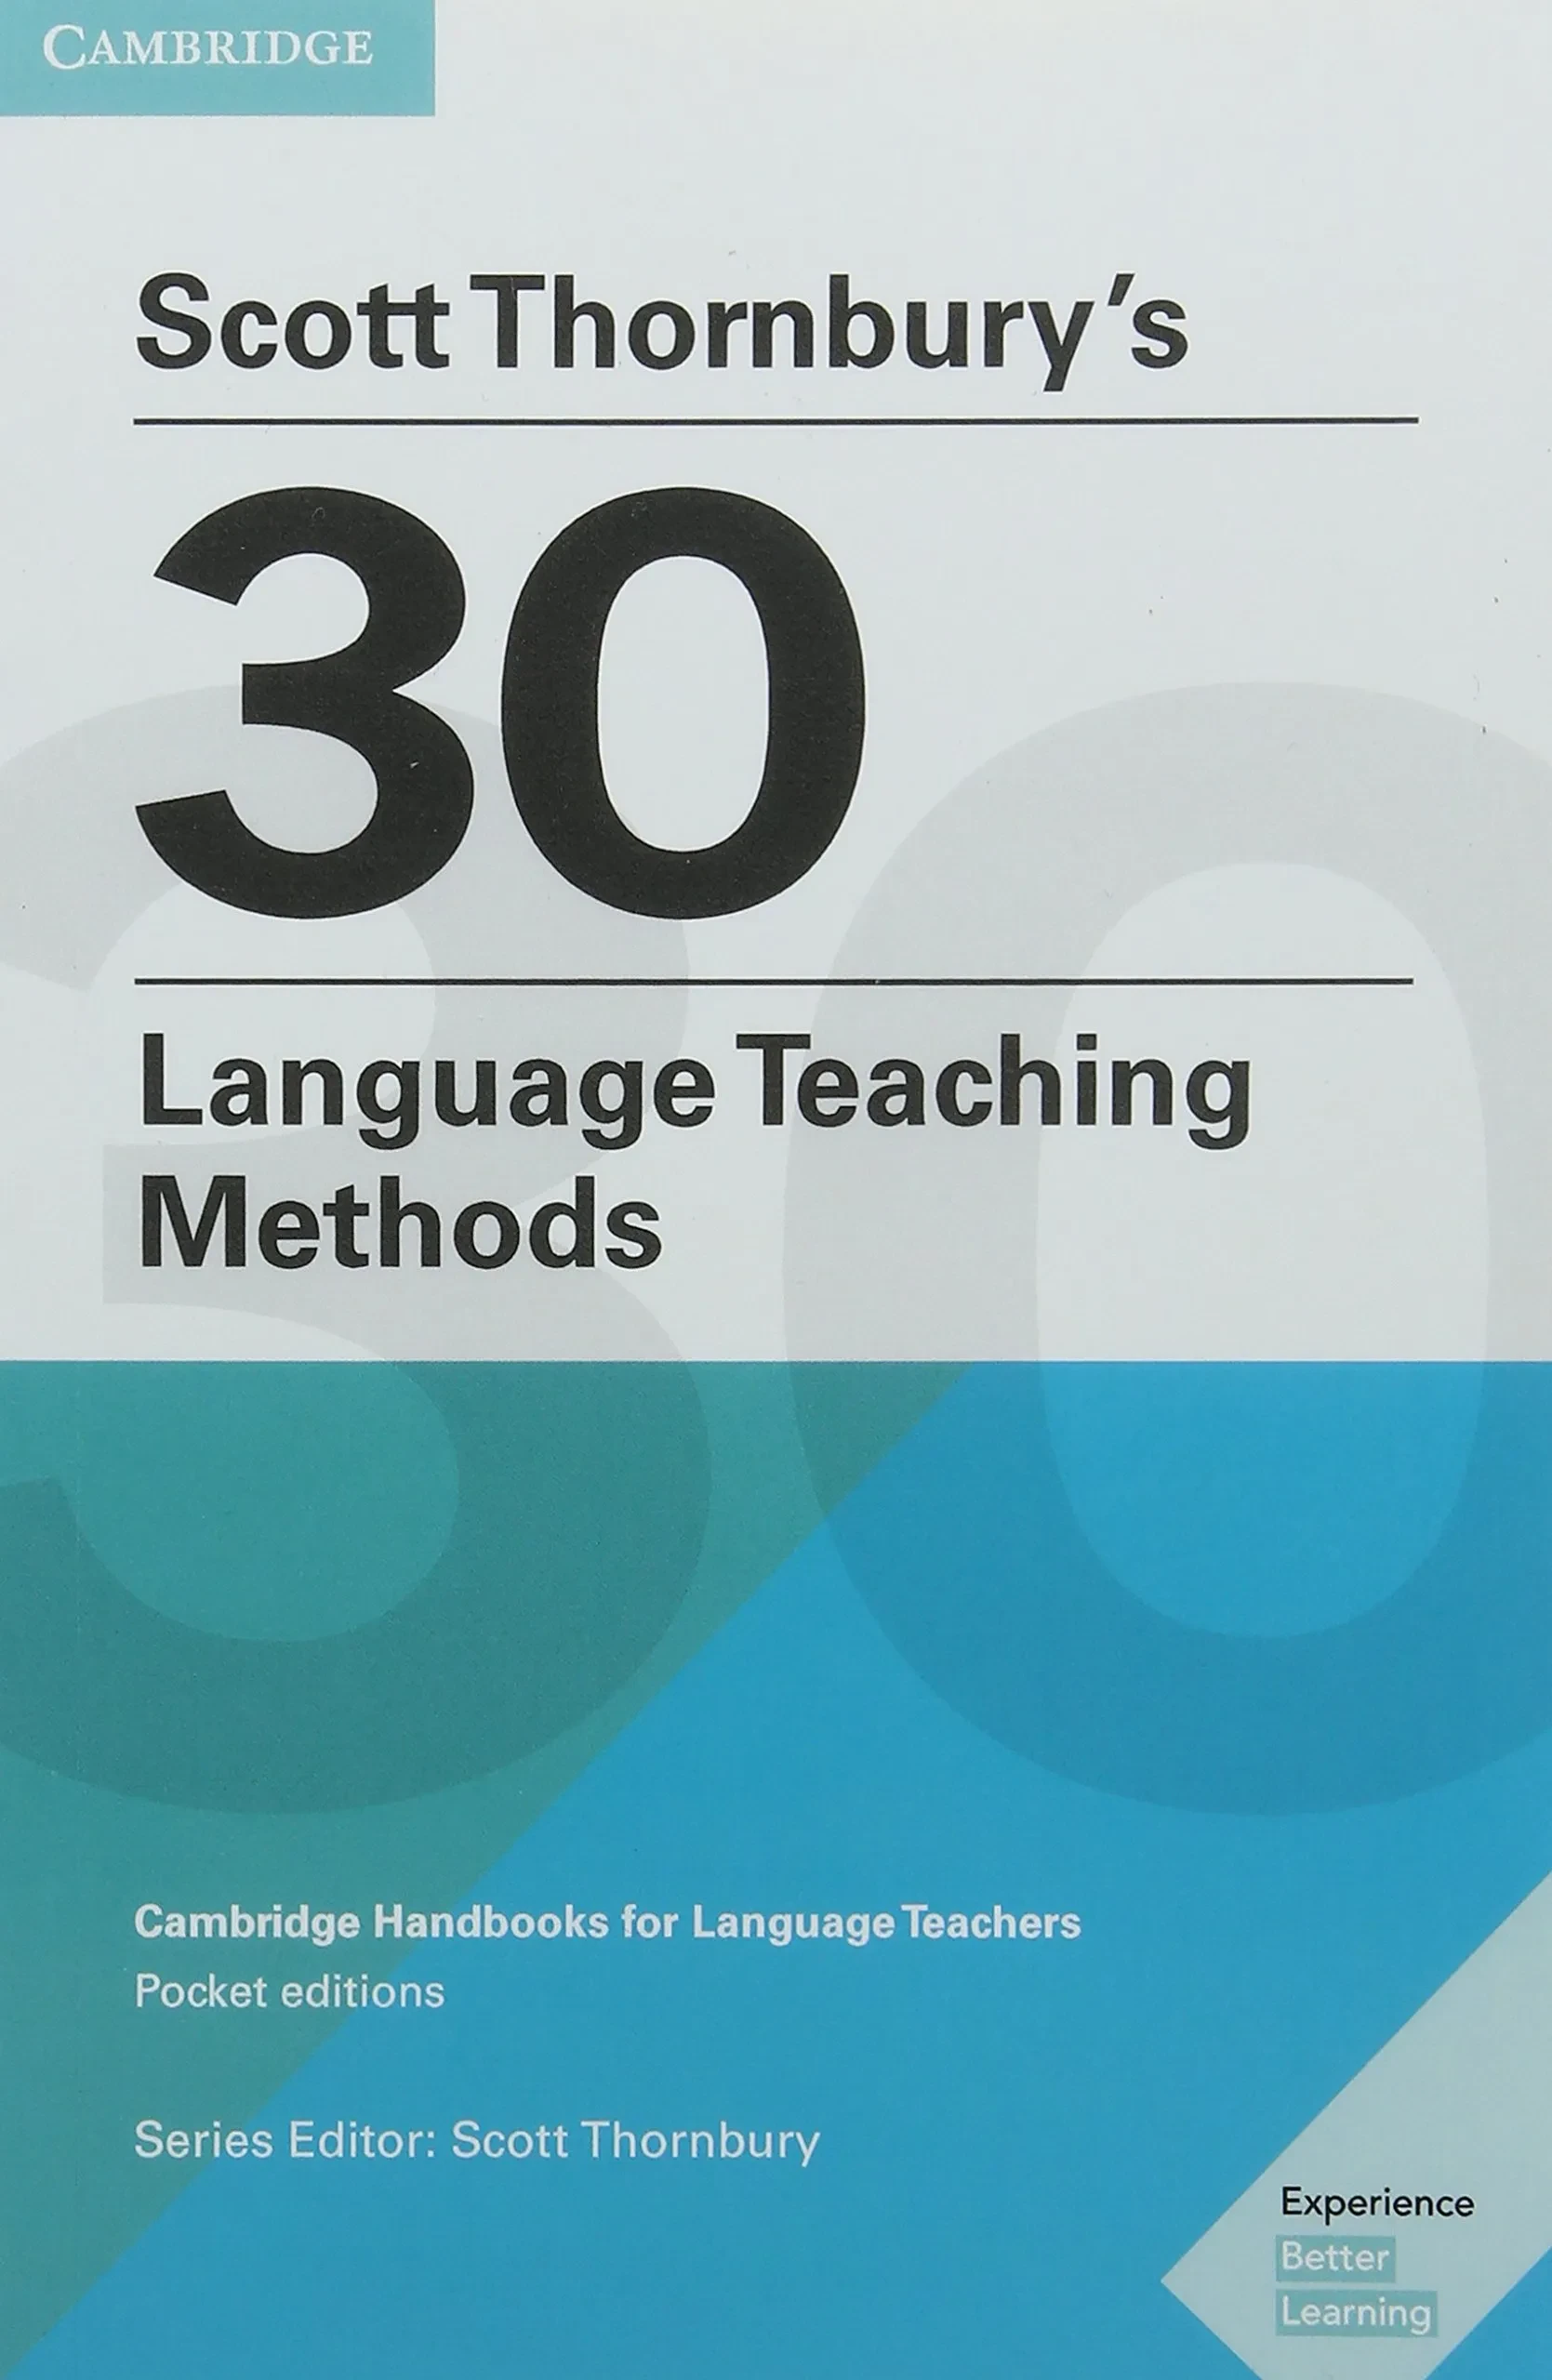 30 Language Teaching Methods новозеландского автора Скотта Торнбьюри